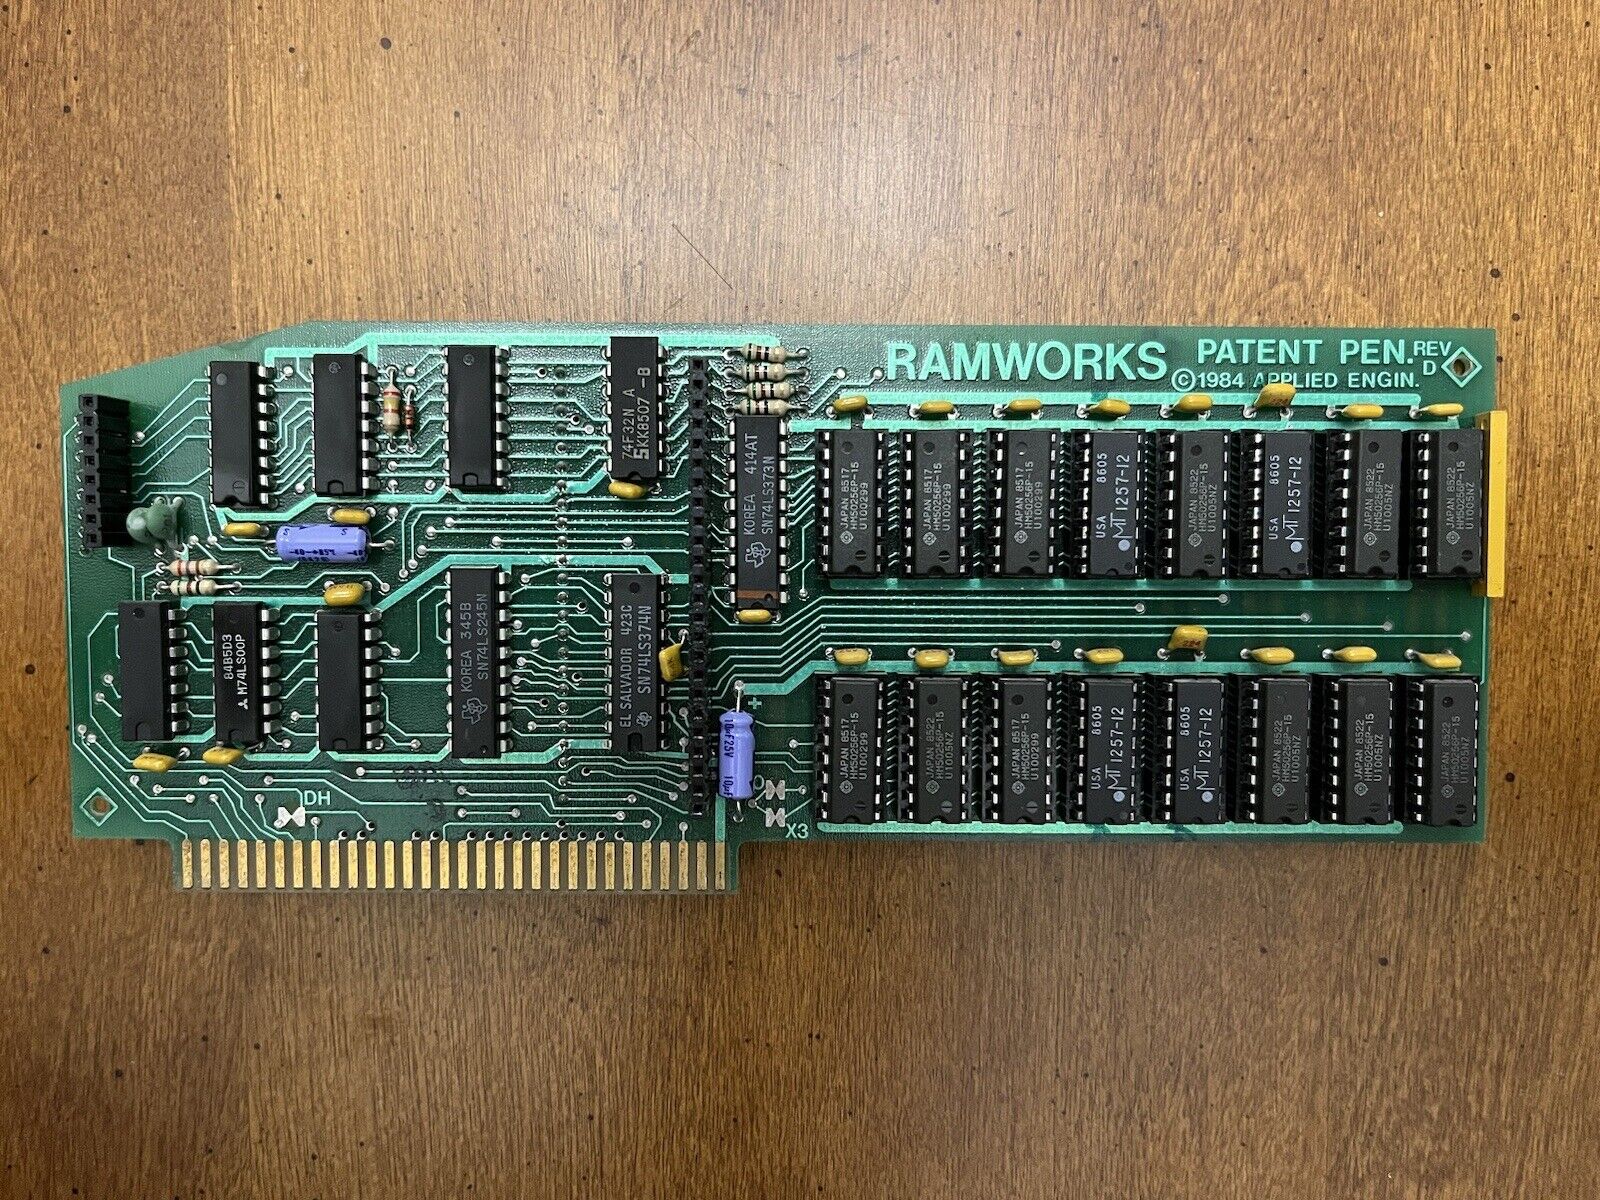 Apple IIe Ramworks RAM Memory Card Applied Engineering *Works*